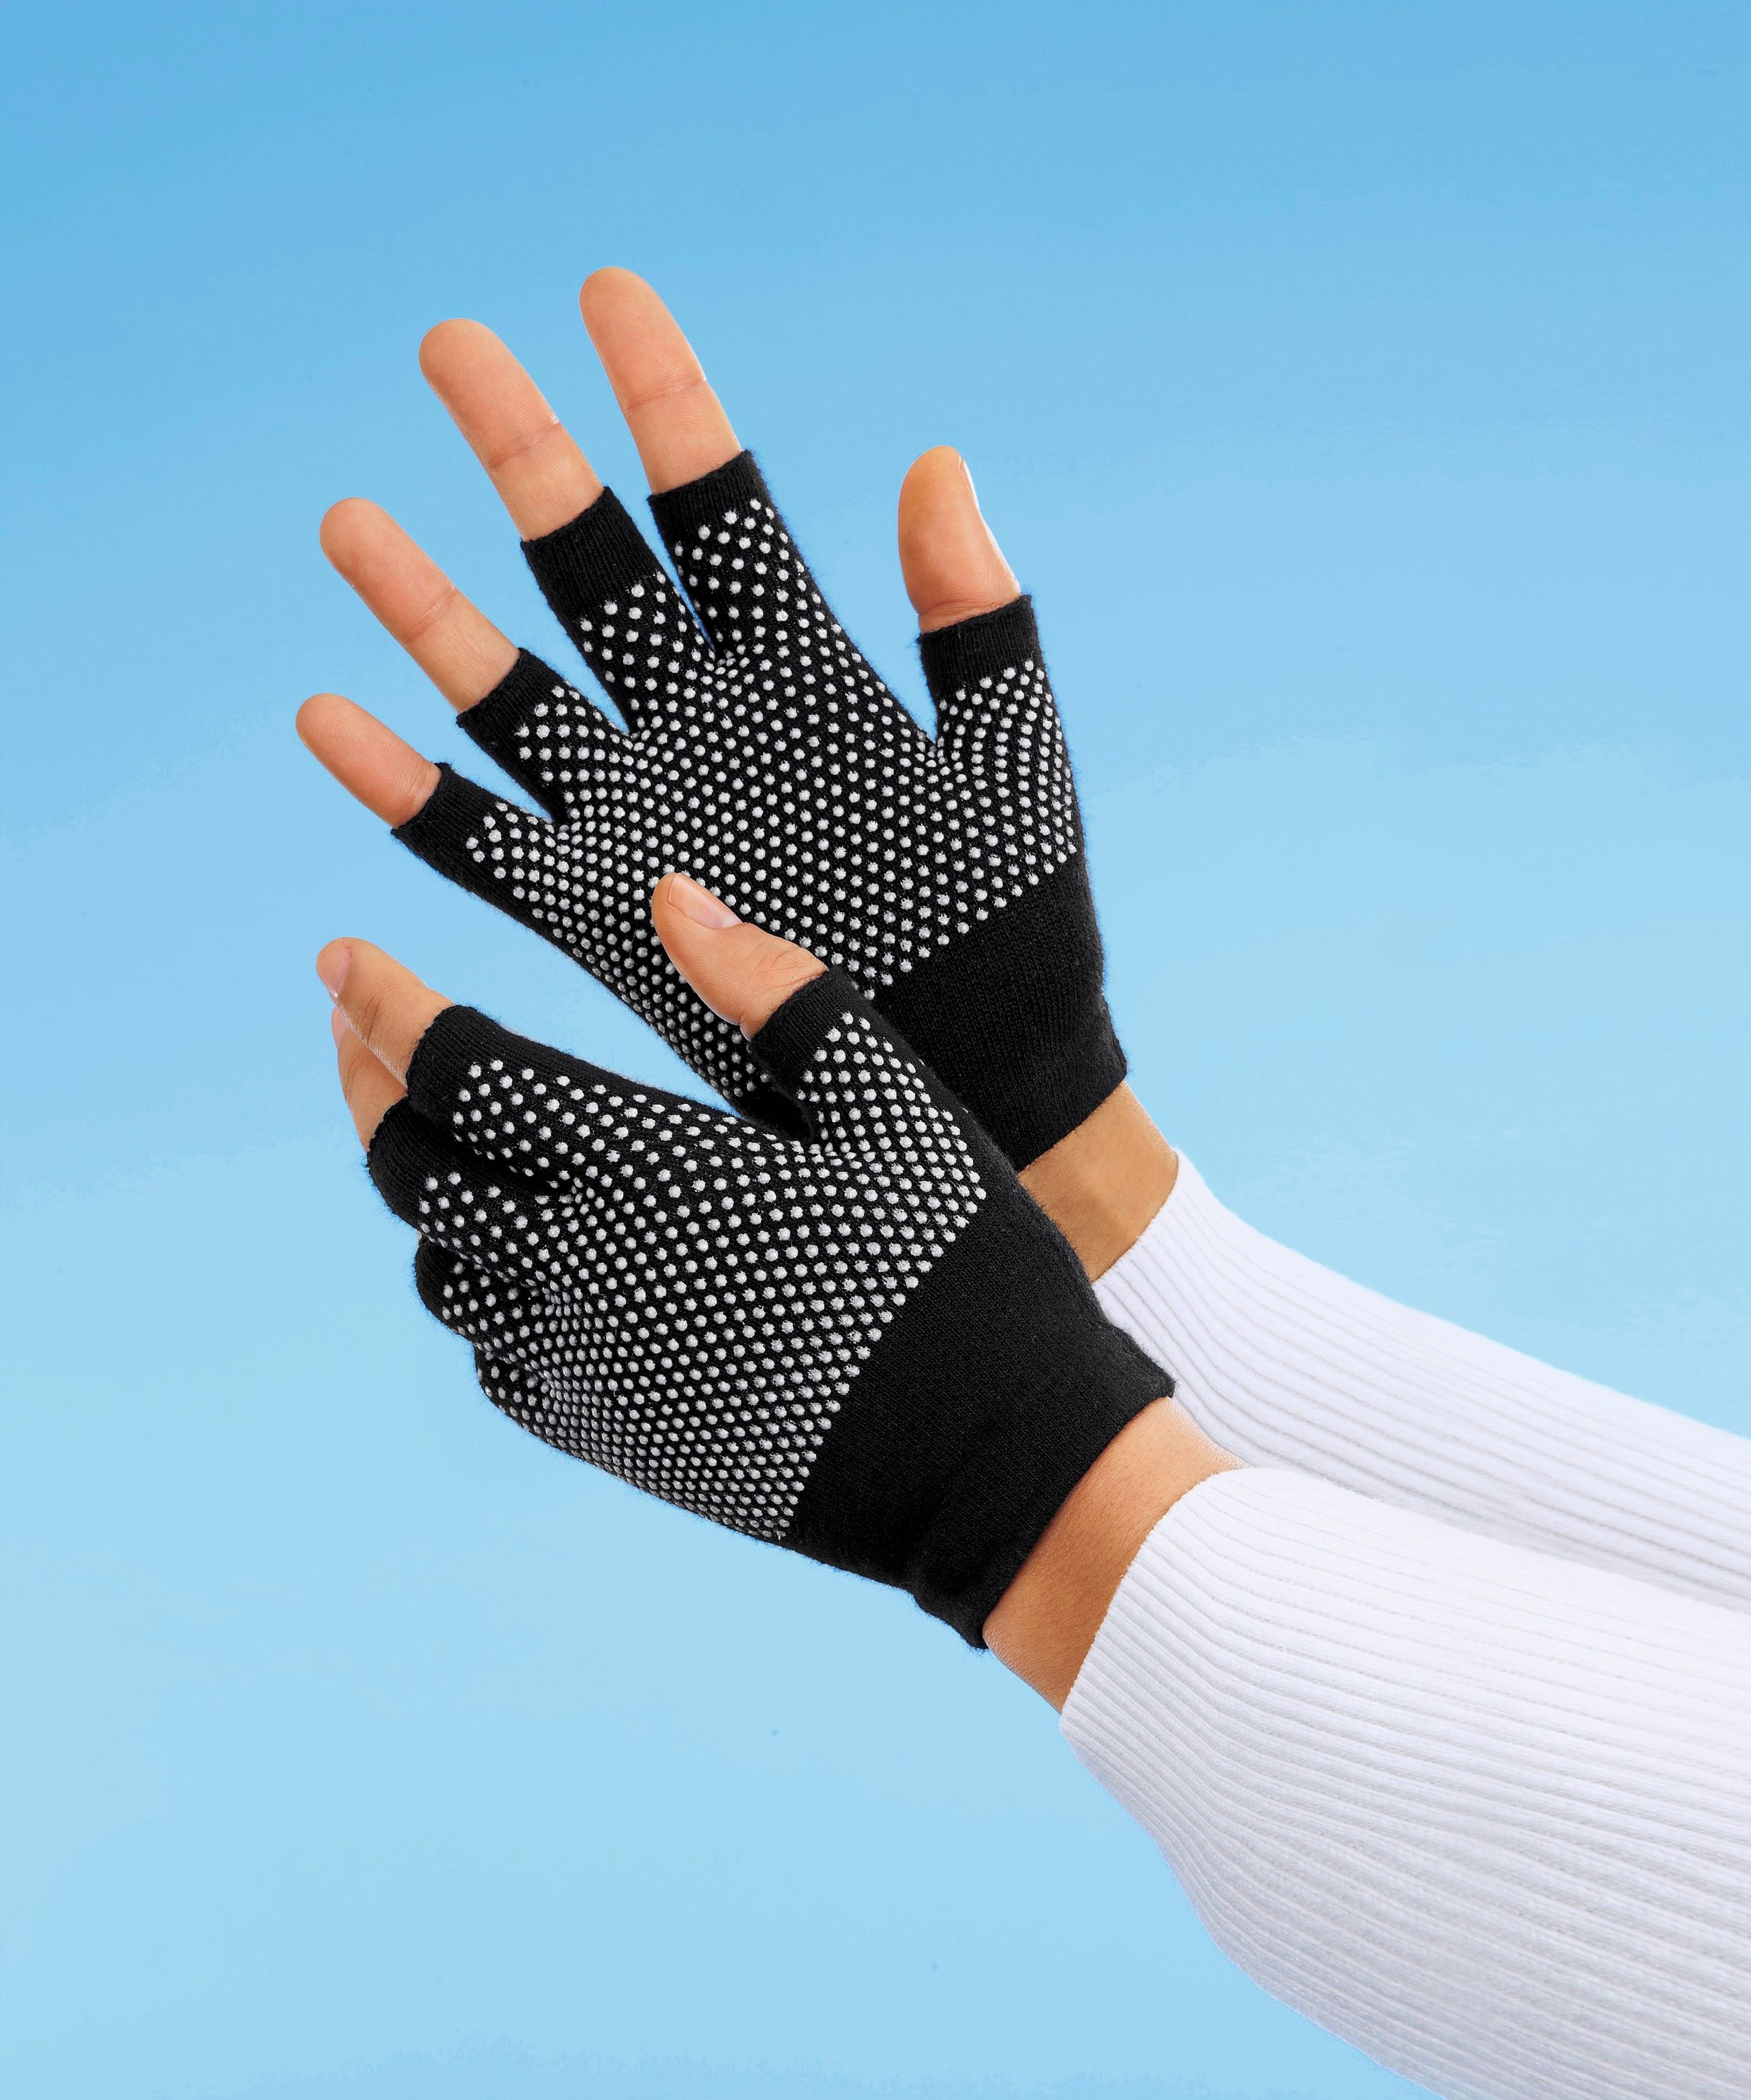 Anti-Kälte Handschuhe jetzt bei Orbisana shoppen!